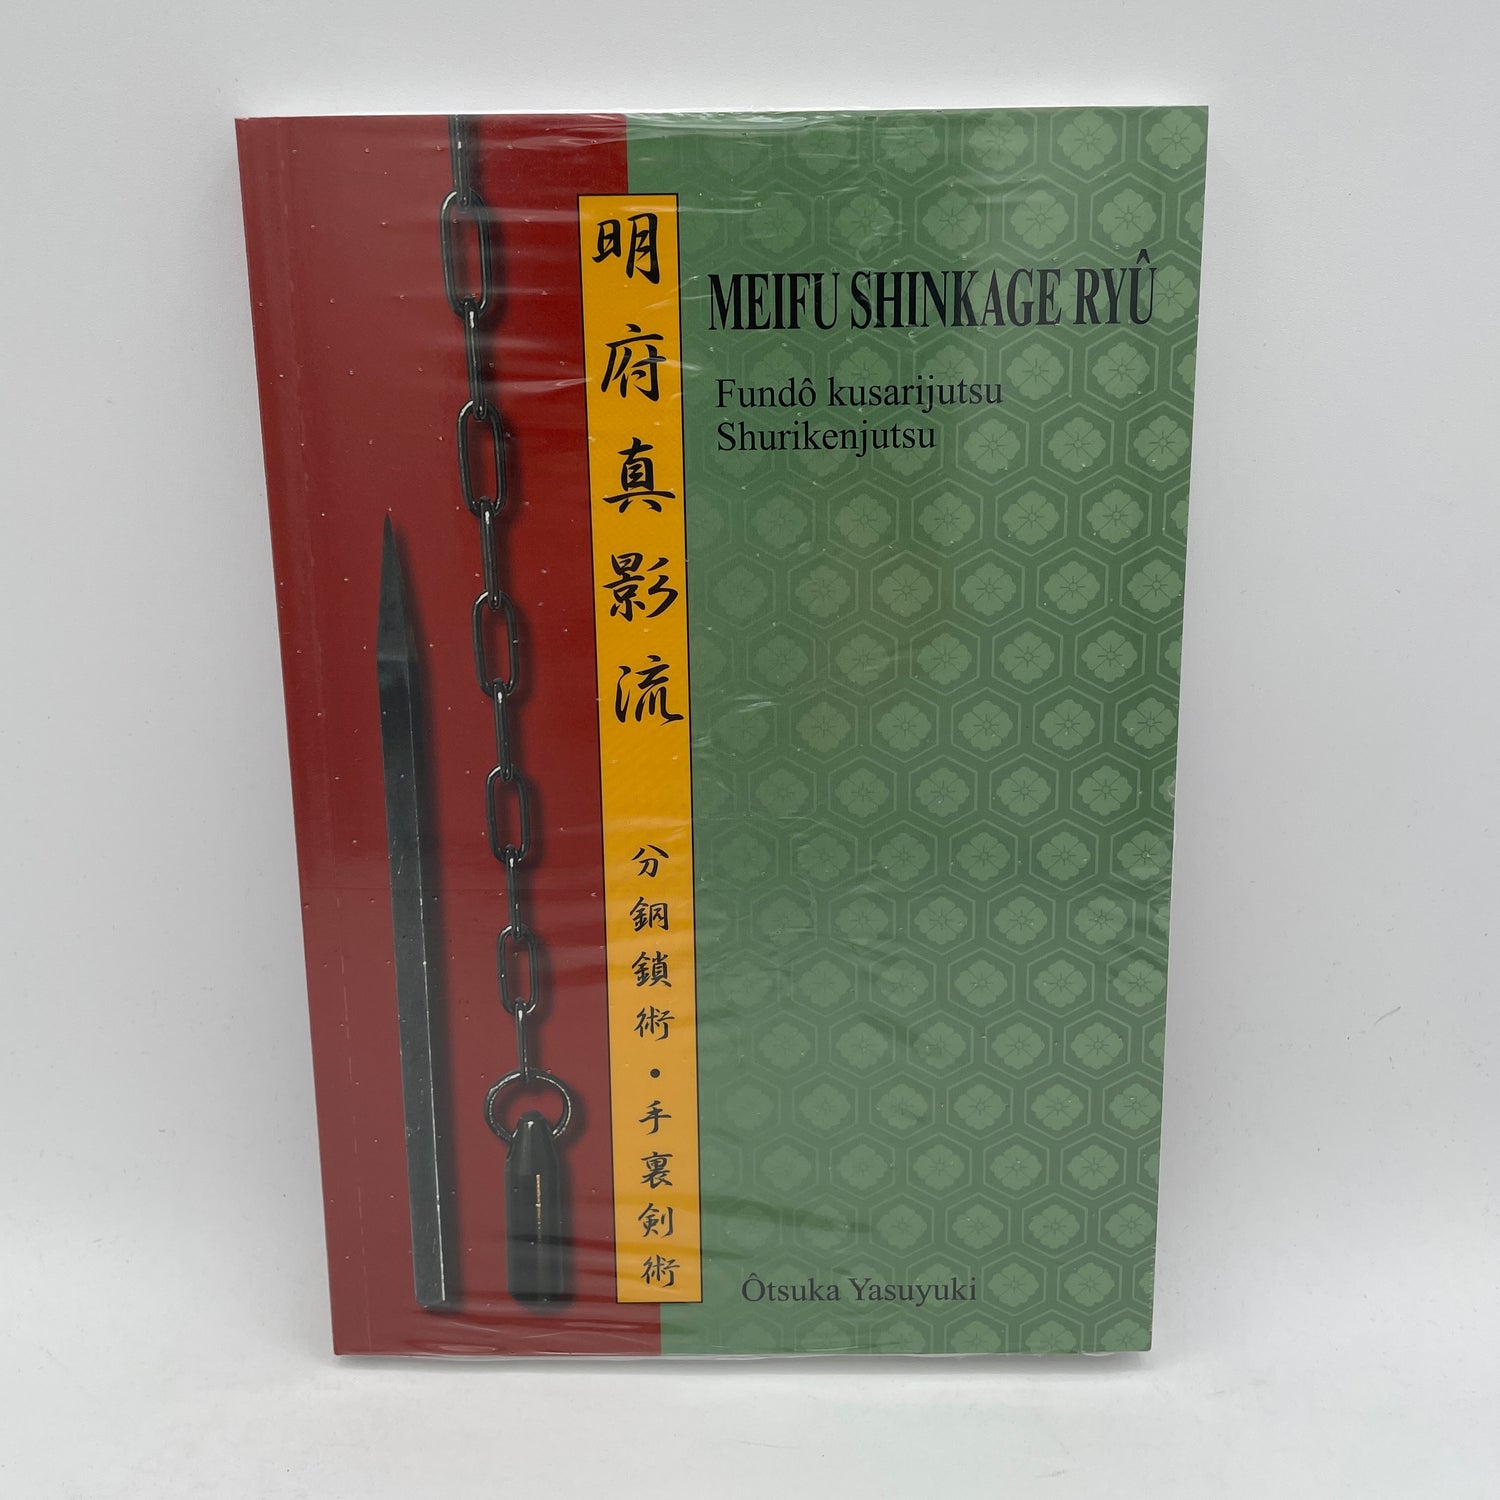 Meifu Shinkage Ryu Shurikenjutsu Book by Yasuyuki Otsuka